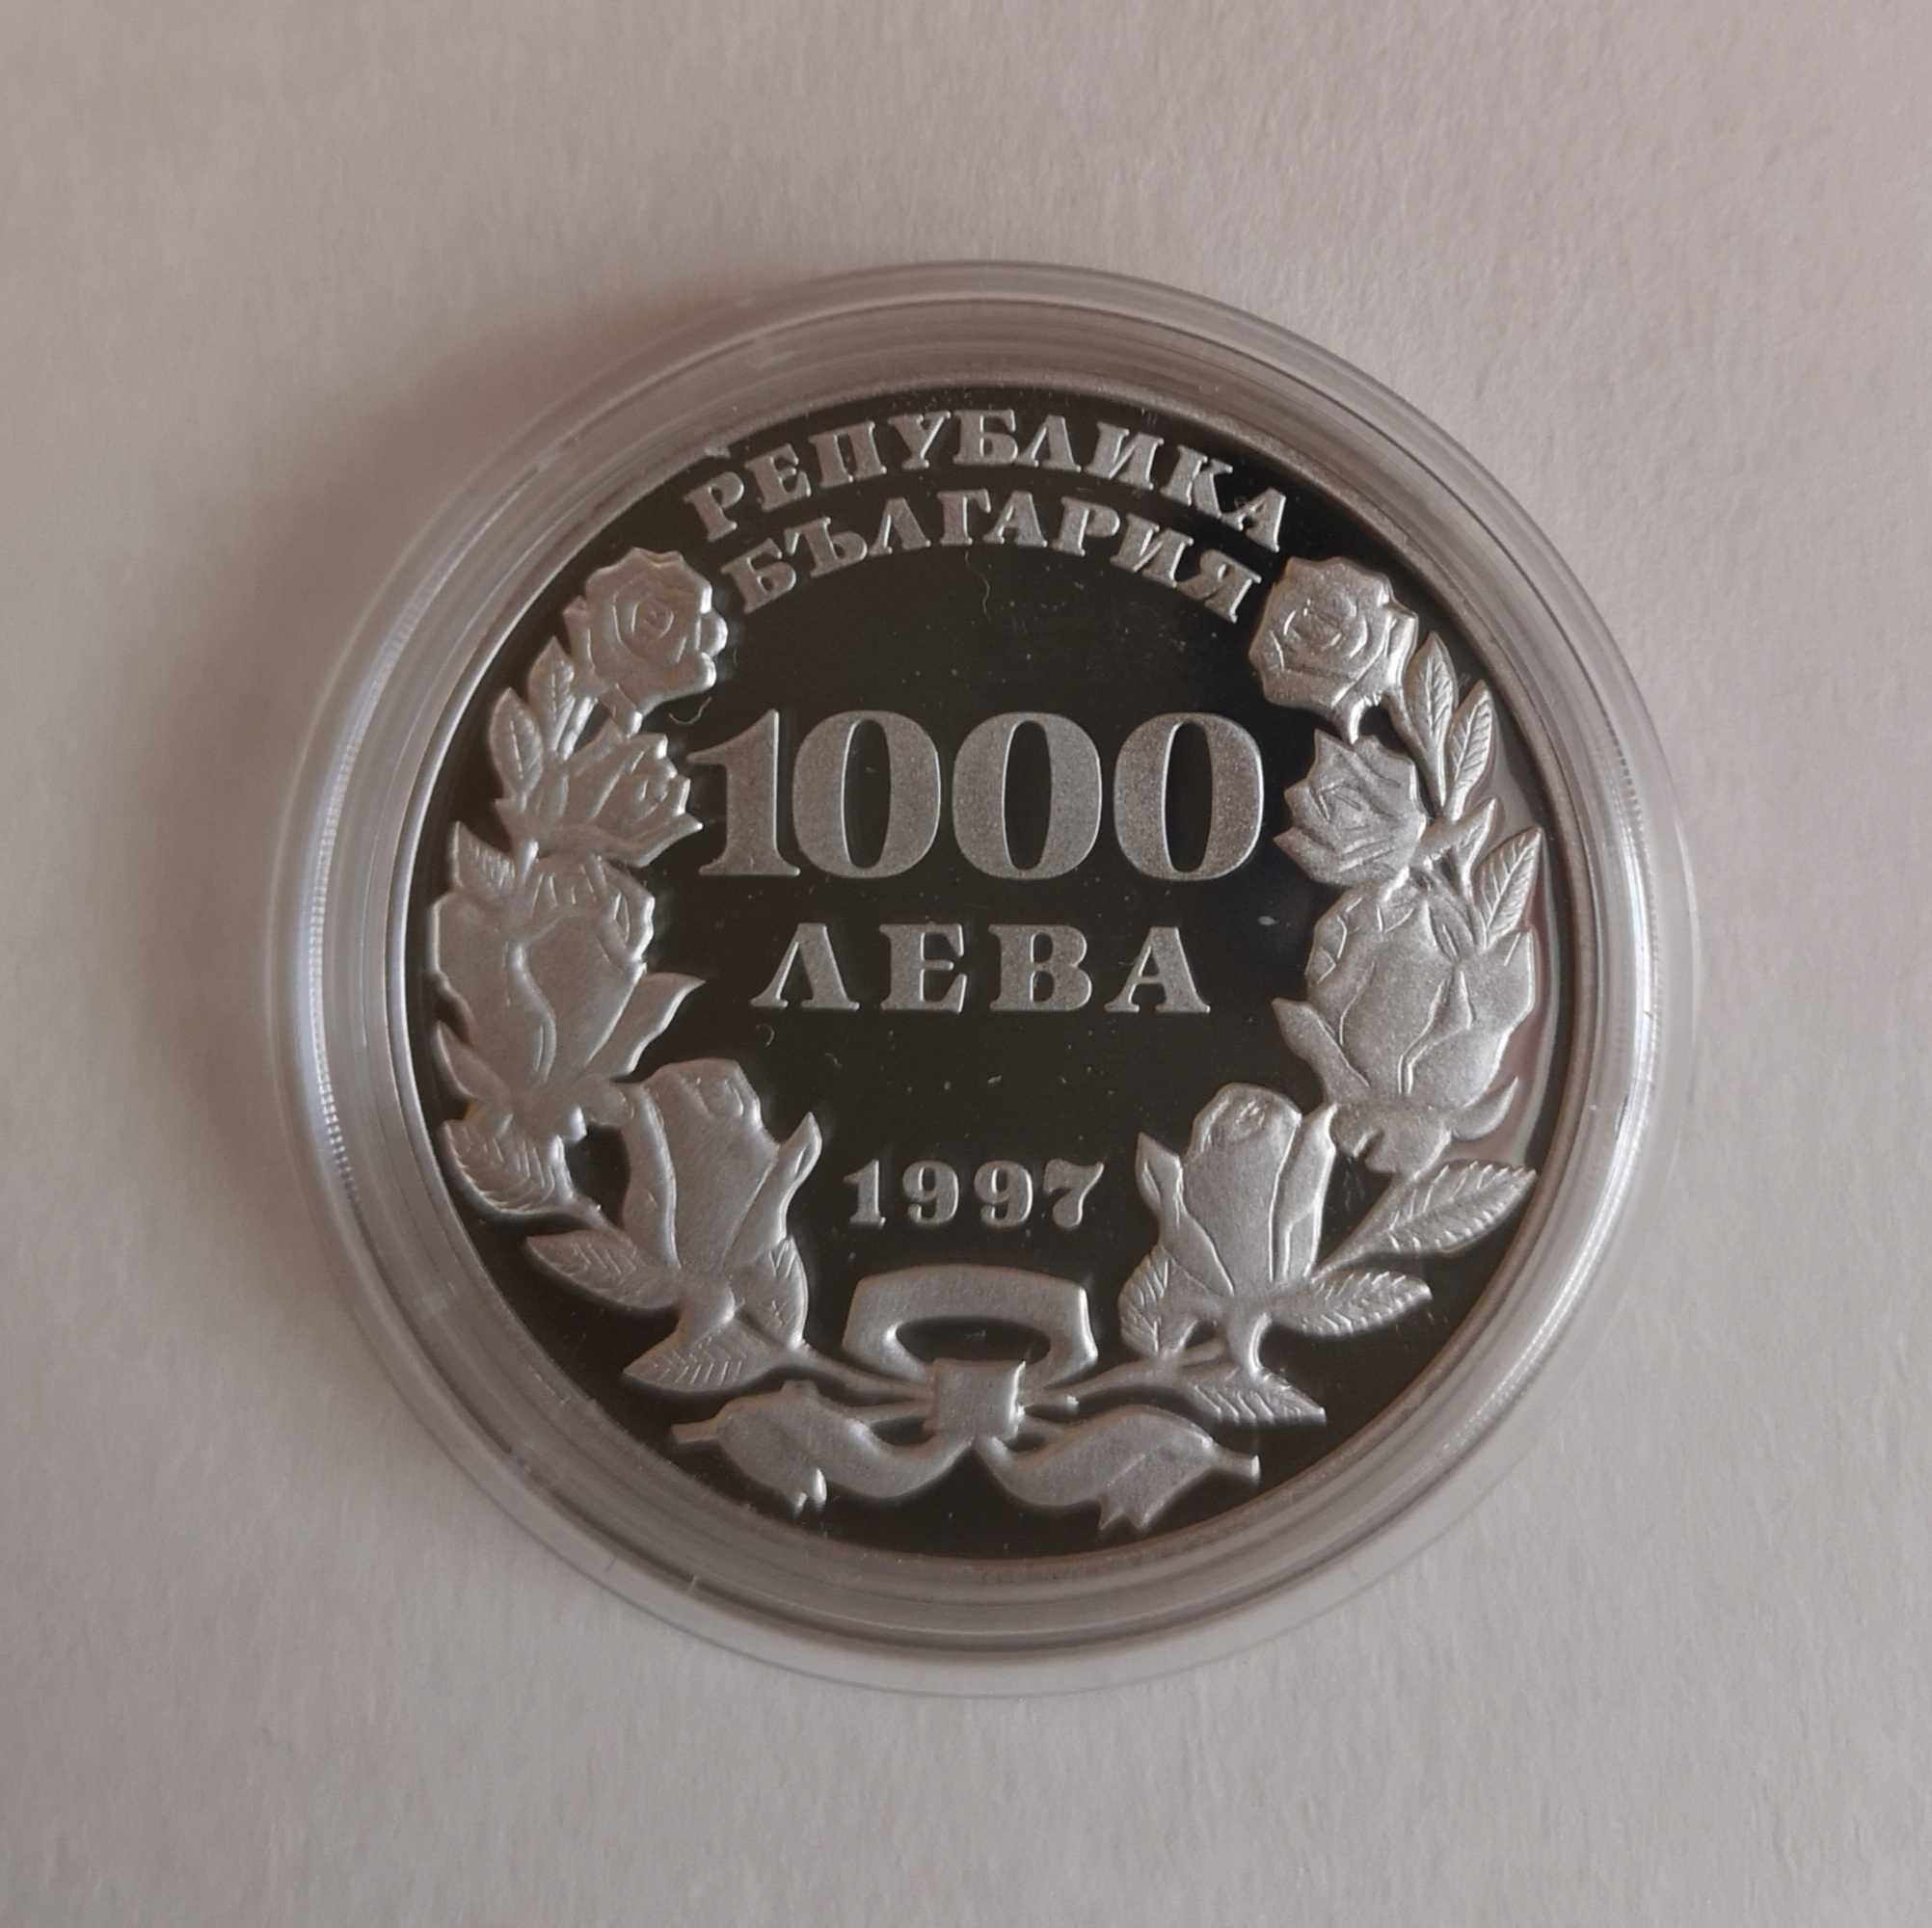 1000 лева 1997 г. Пеещо българче